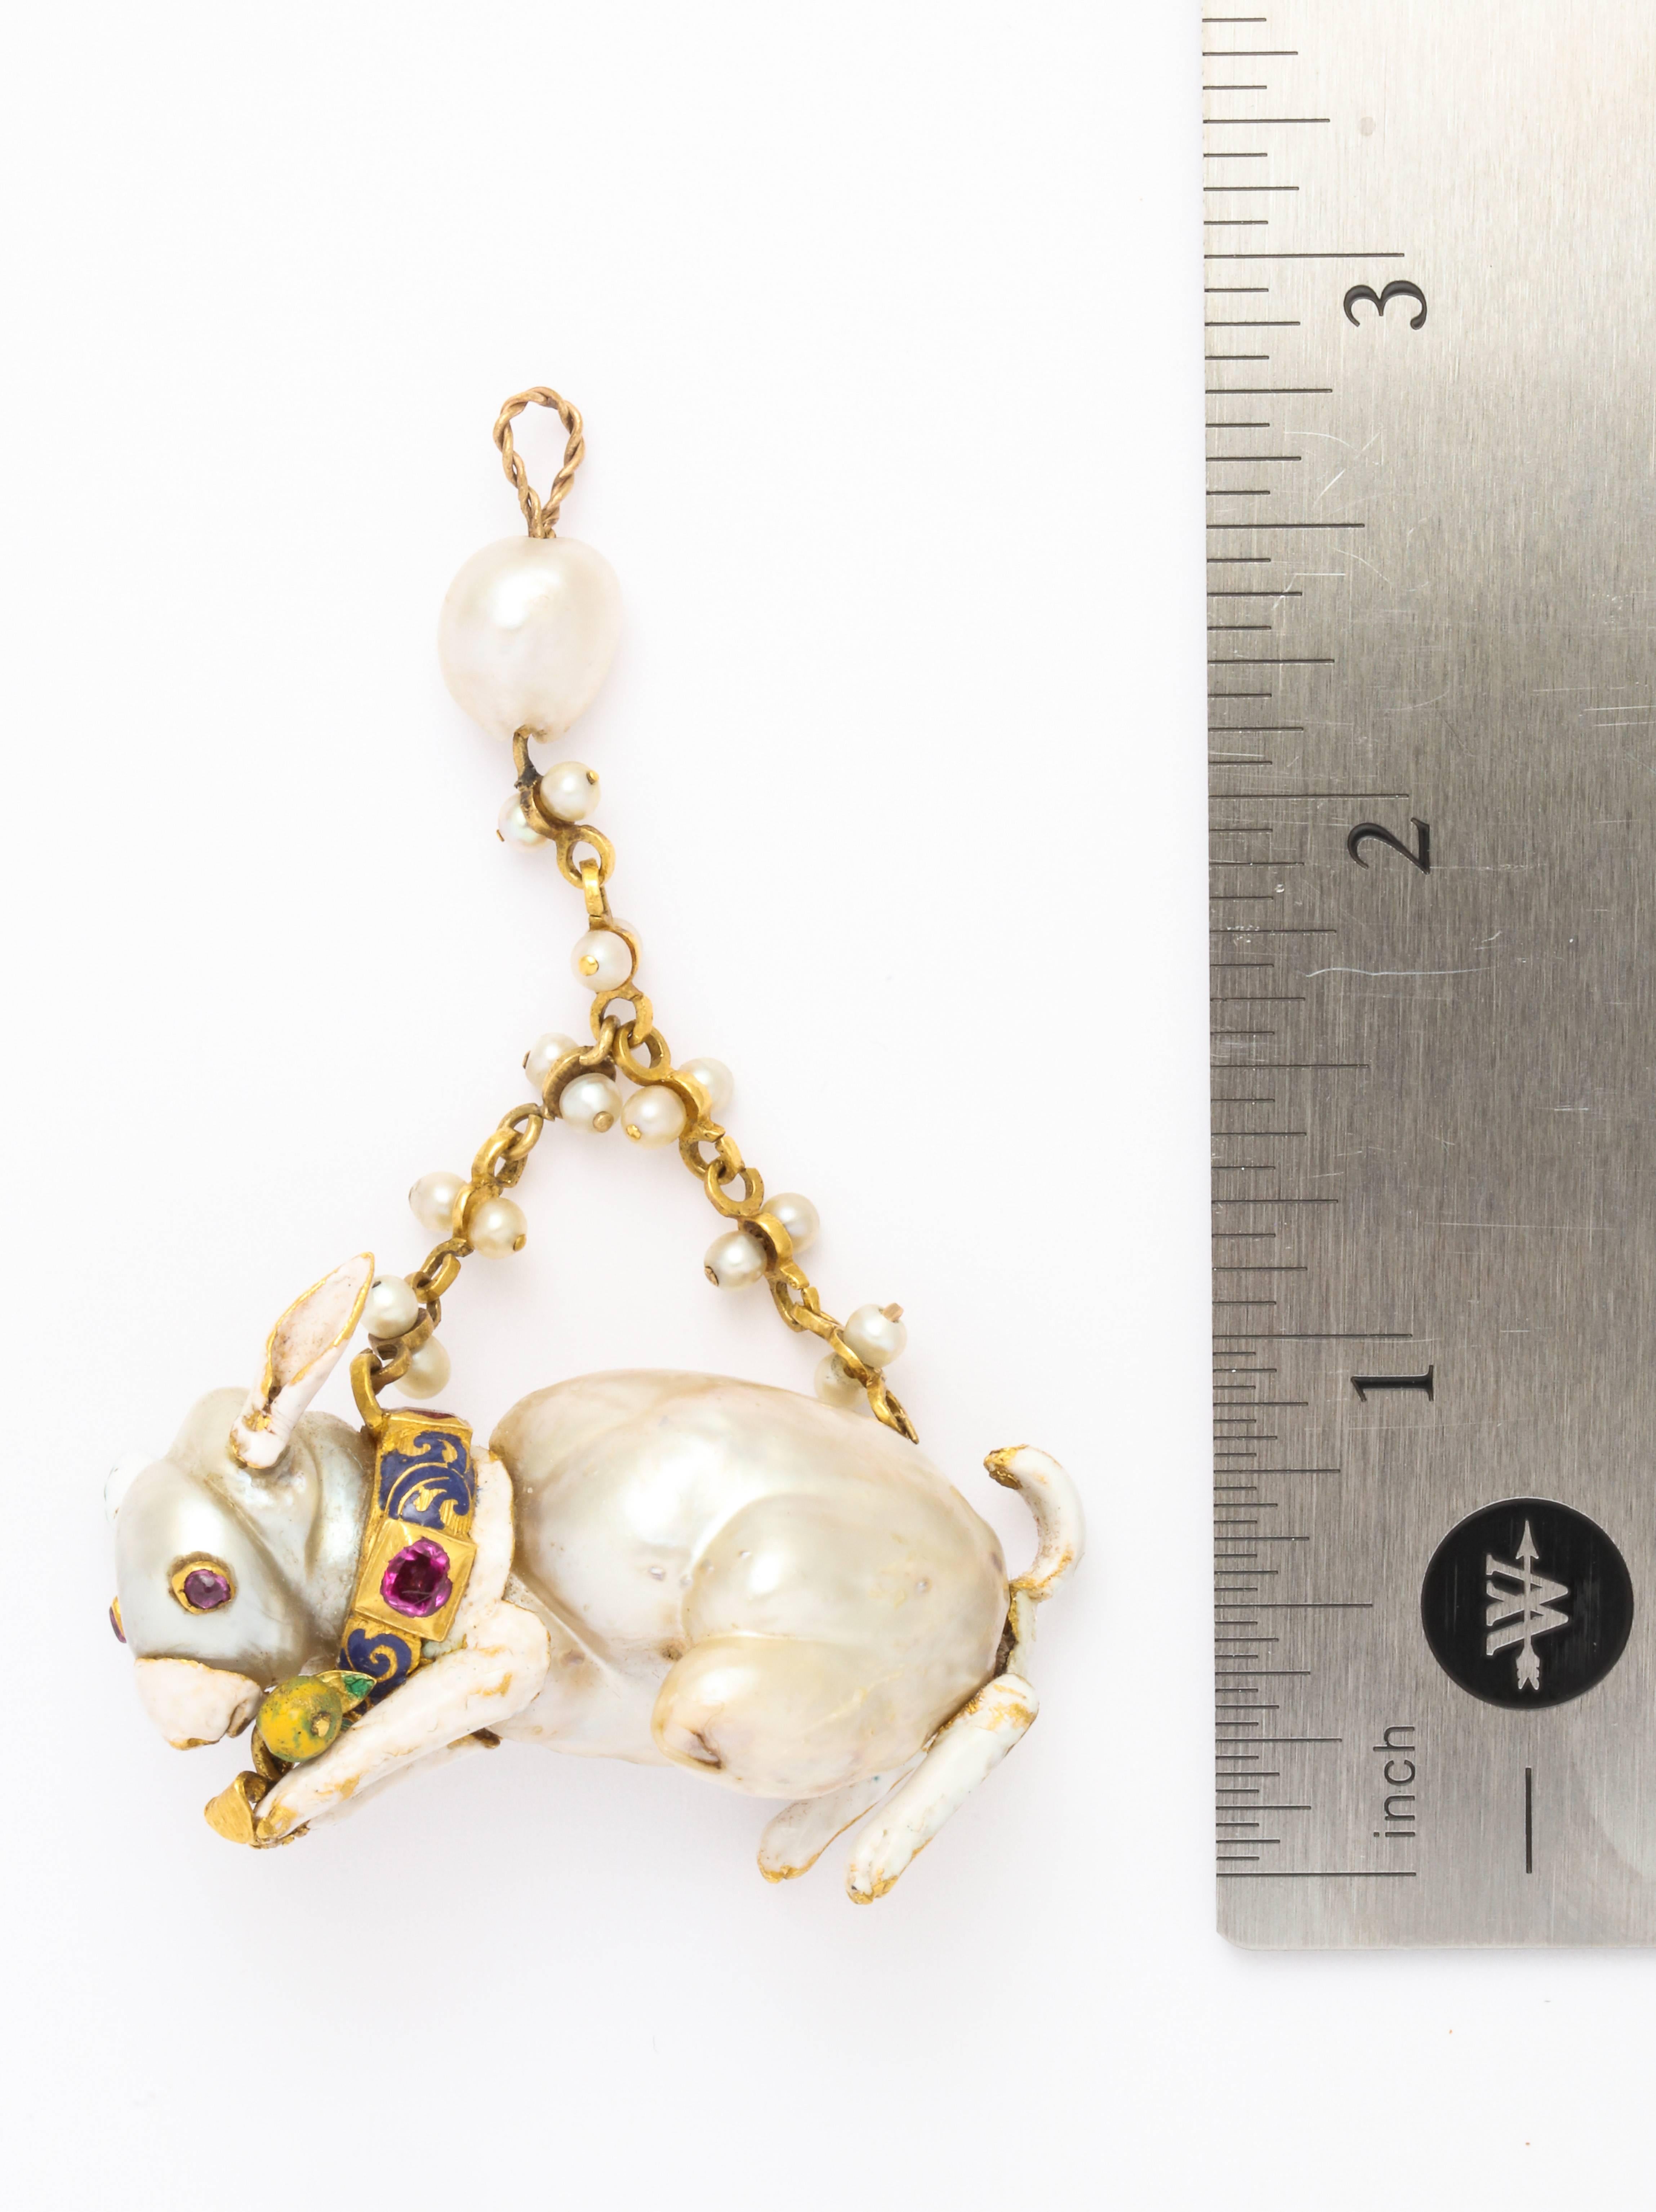 Uncut 19th Century Renaissance Revival Natural Pearl Gold Rabbit Pendant For Sale